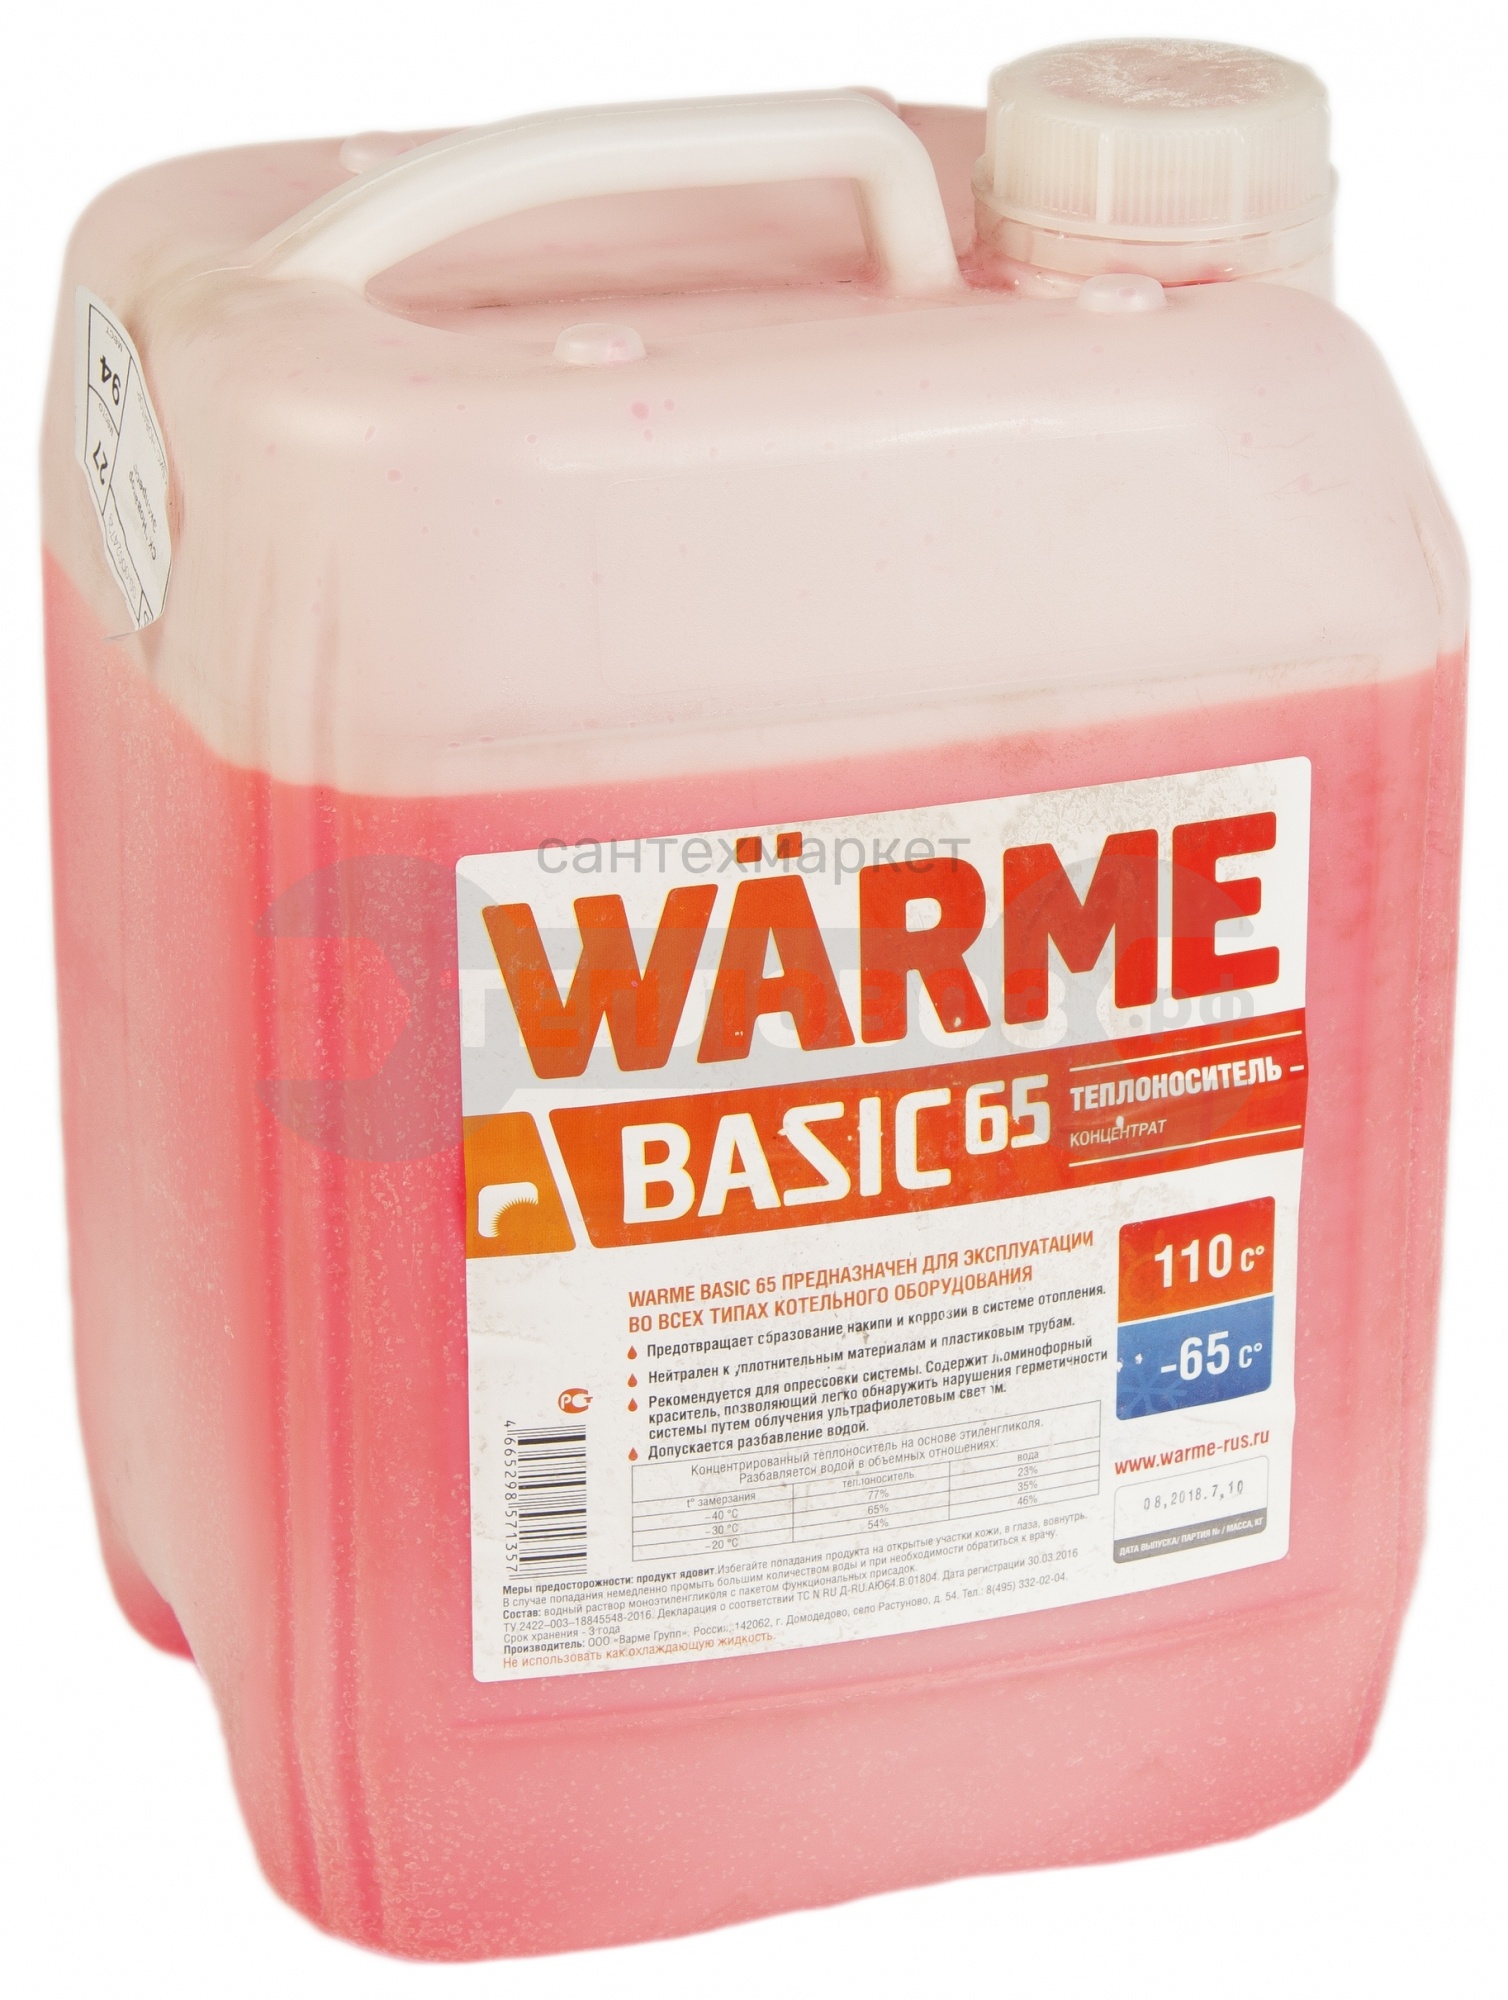 Купить Warme Basic 65 (АВТ- 65), 10 кг в интернет-магазине Дождь